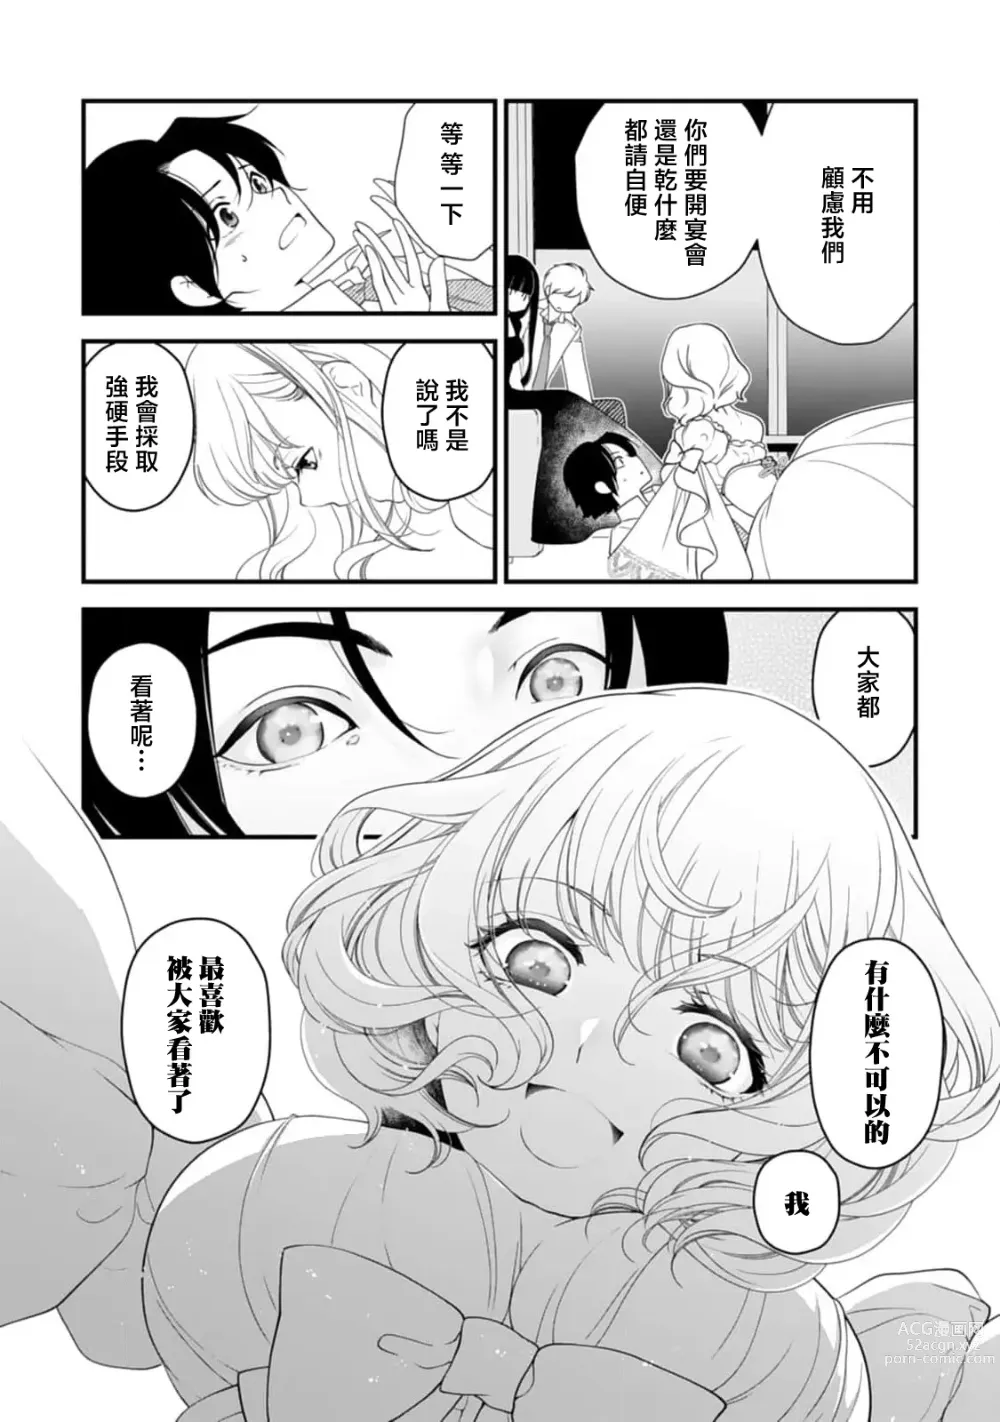 Page 10 of manga 被众人围观的豹变结婚典礼，新娘想夺回最爱的丈夫